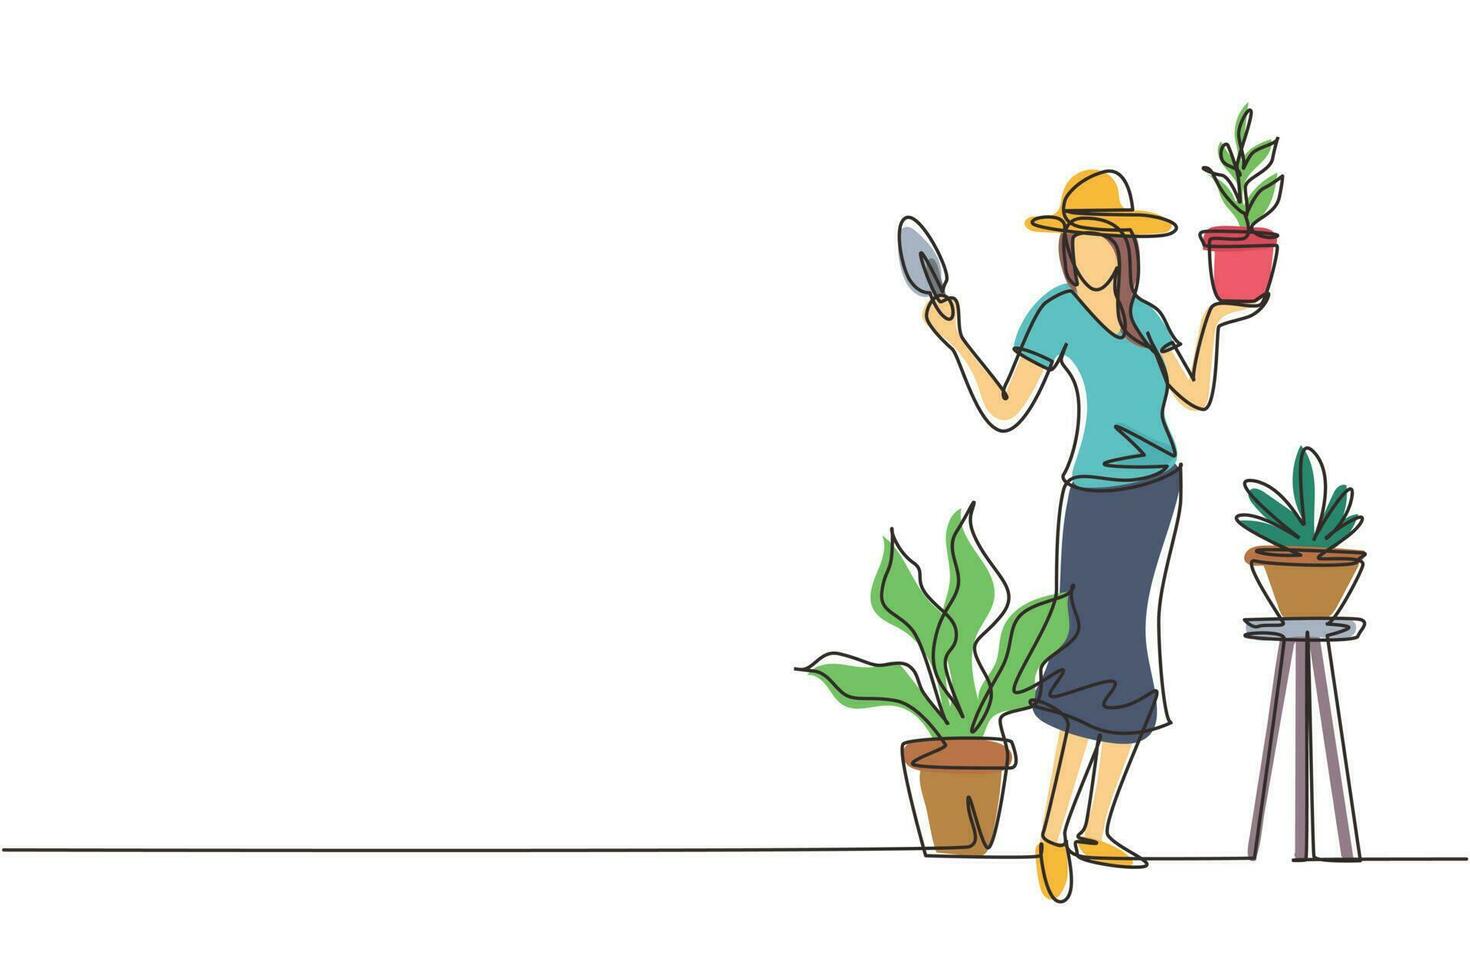 mujer jardinera de dibujo de una sola línea, florista trabajando en el jardín botánico, patio trasero de la casa, plantando flores, sosteniendo una pequeña pala. estante, planta en macetas. ilustración de vector de diseño de dibujo de línea continua